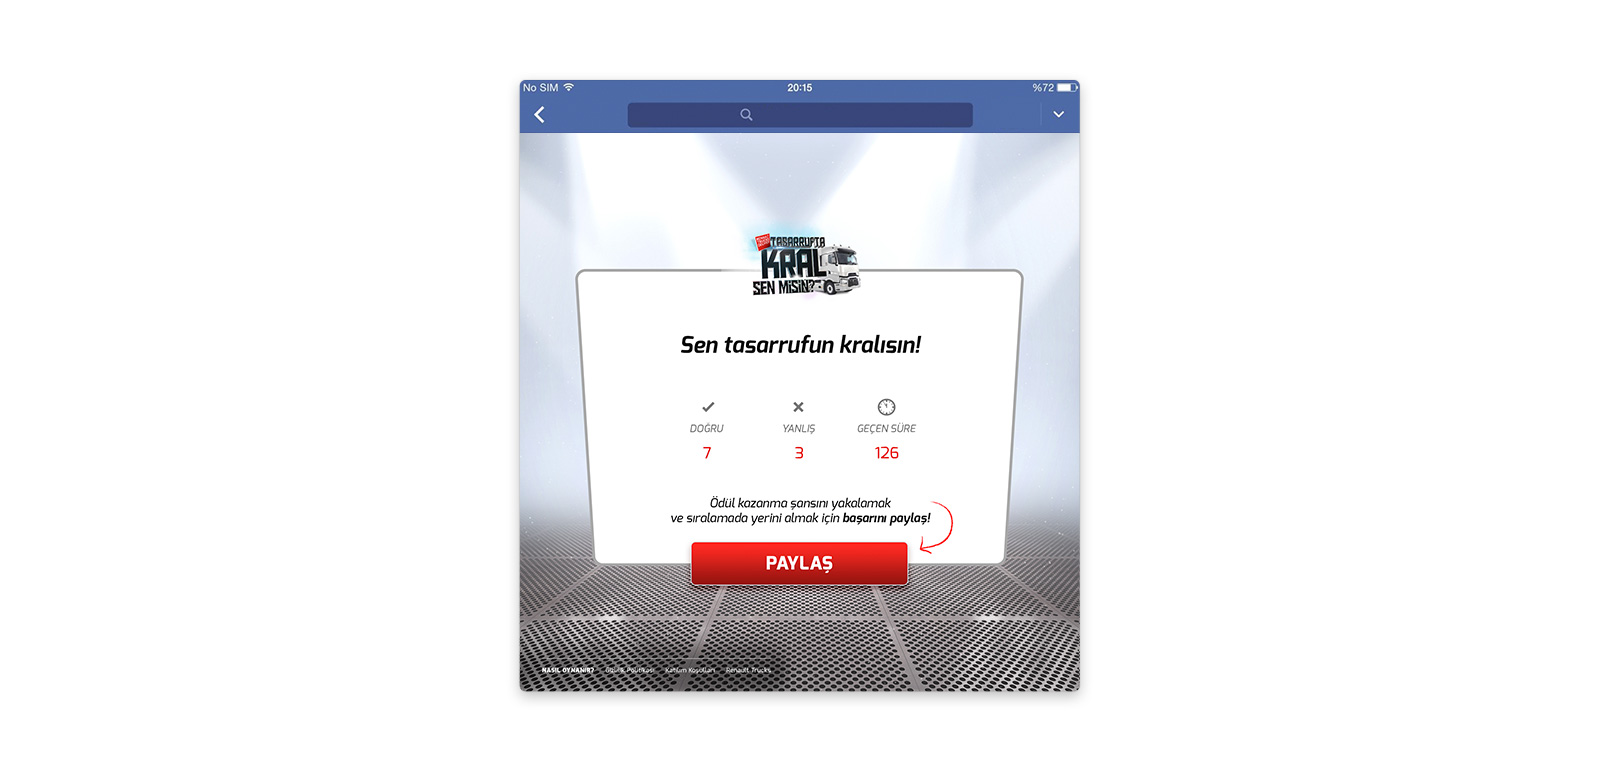 Renault Trucks Turkey - Tasarrufta Kral Sen Misin? FB App 3